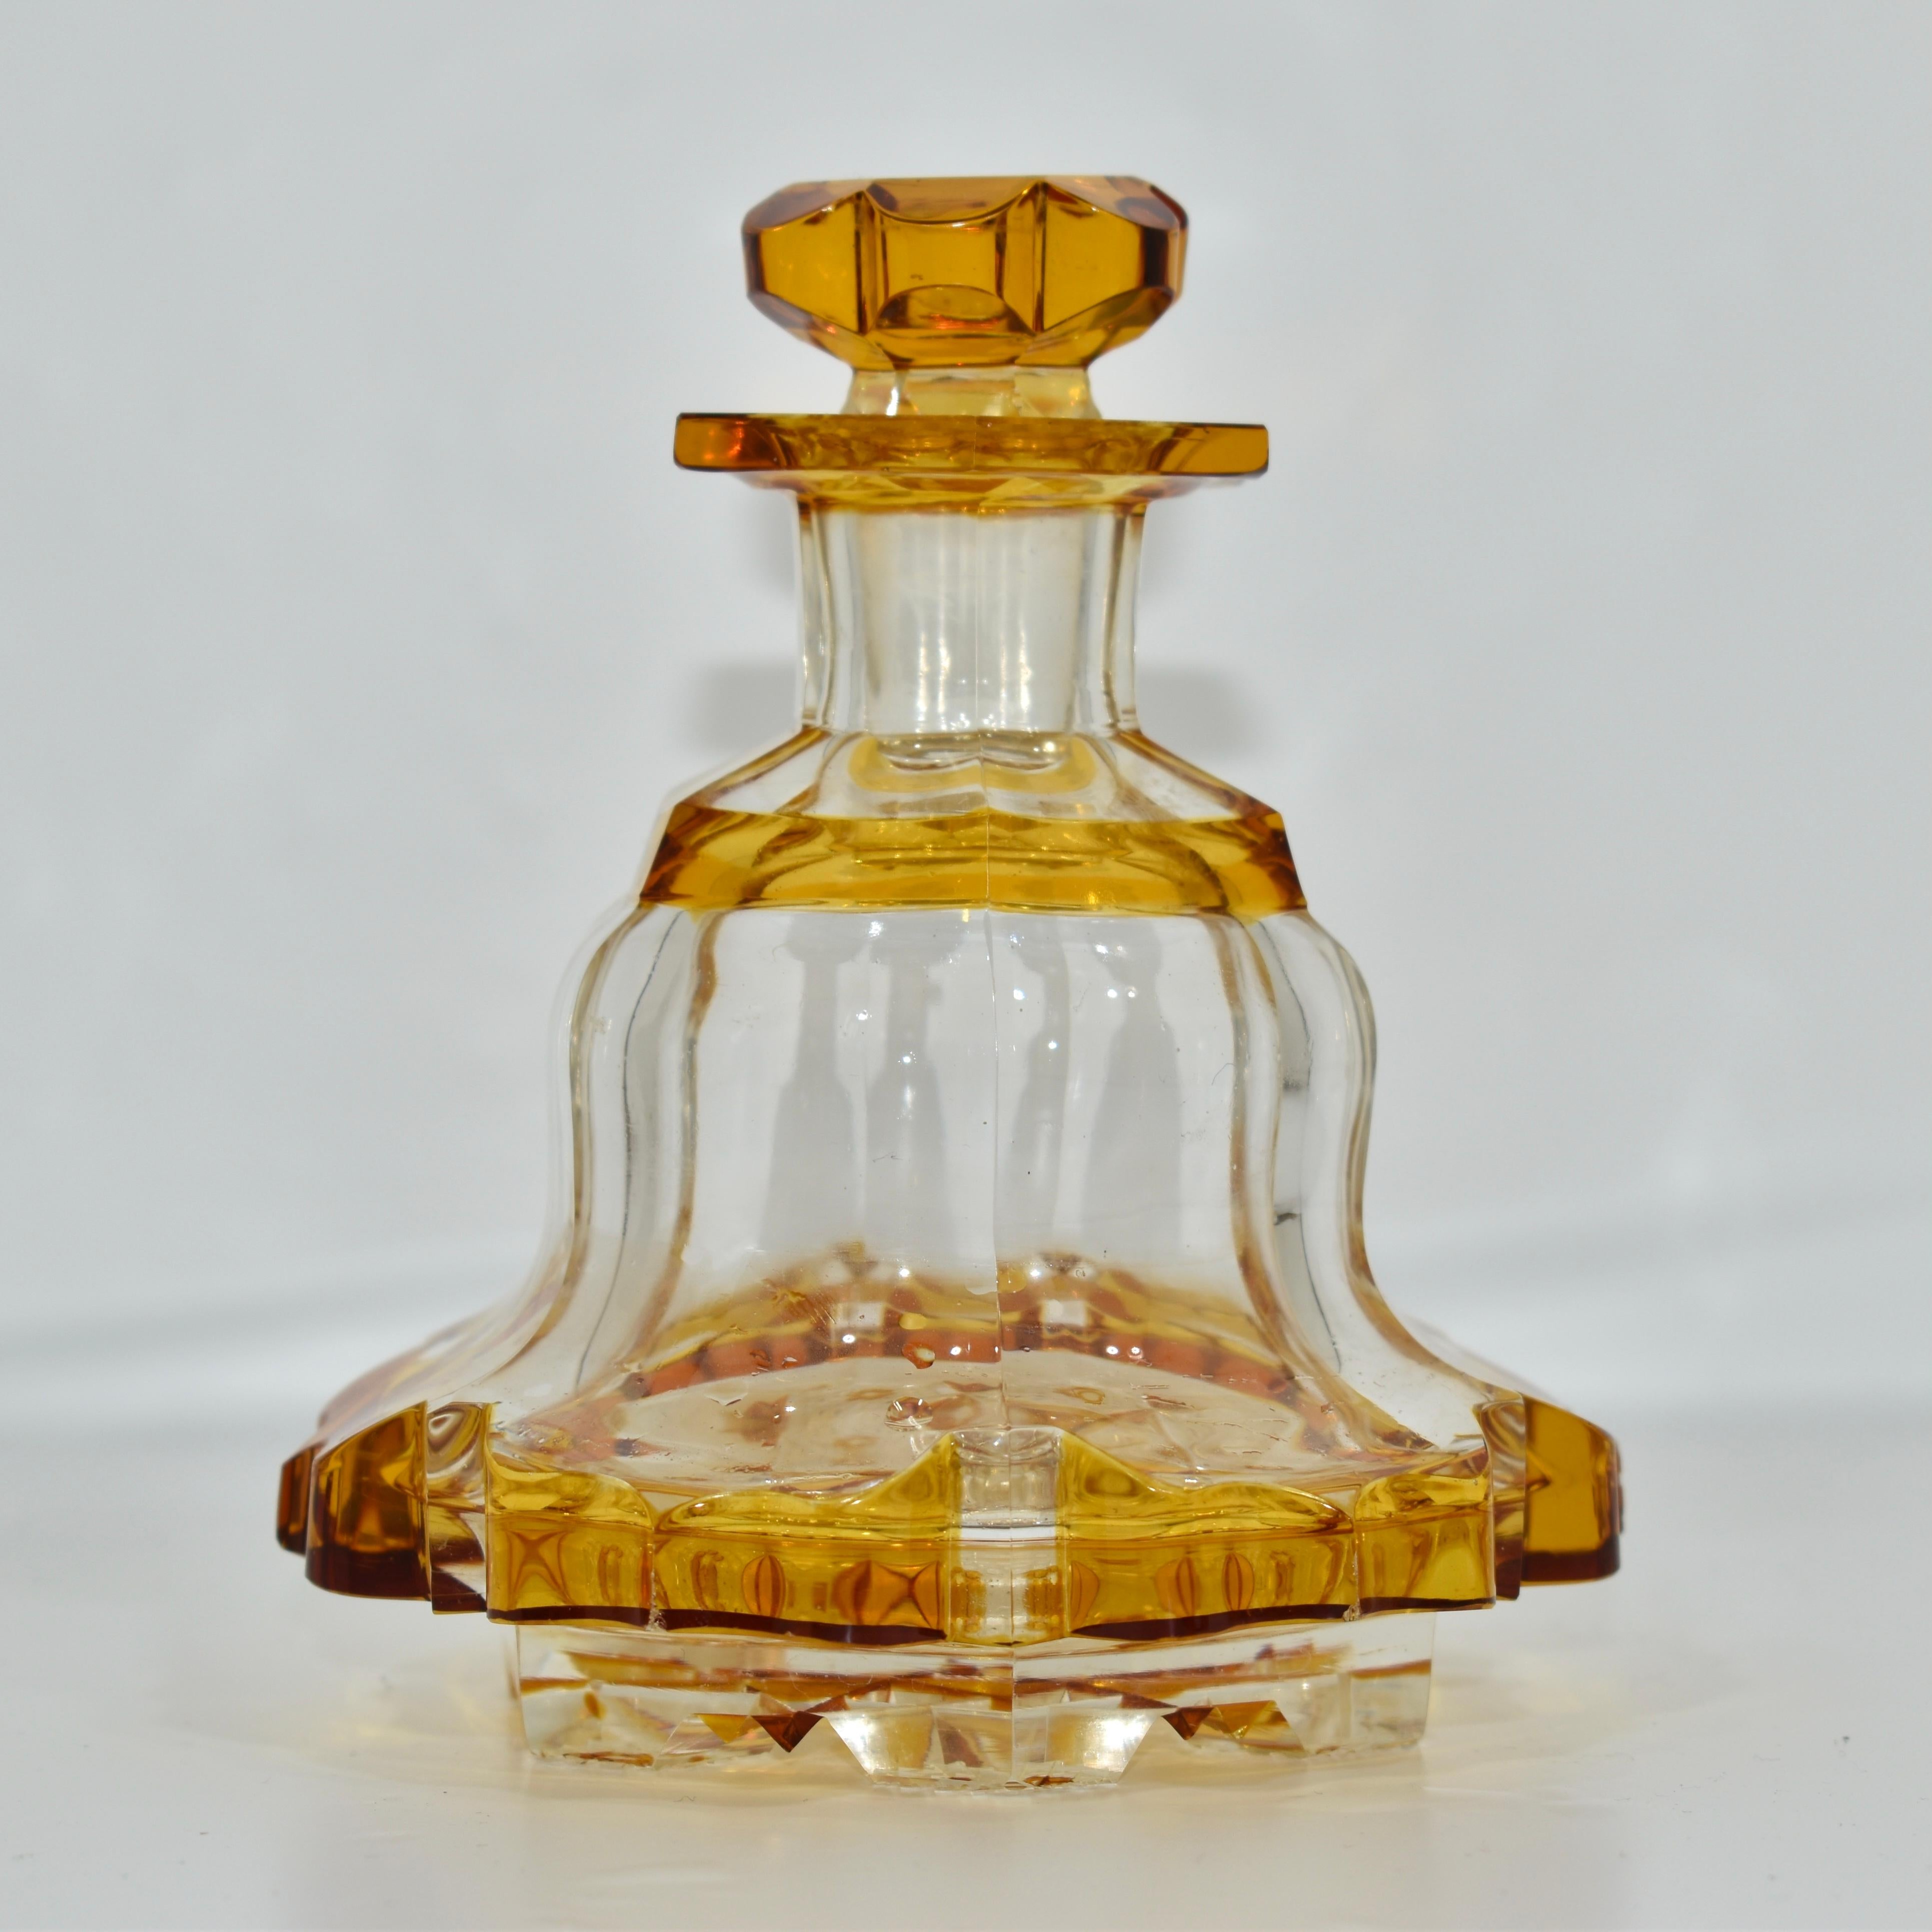 Flacon de parfum ancien, avec bouchon, très rare verre de cristal clair et ambré

profondément découpé à la main en forme de six étoiles en dessous

la base brillamment taillée en bas témoigne de la qualité et de l'authenticité de ce